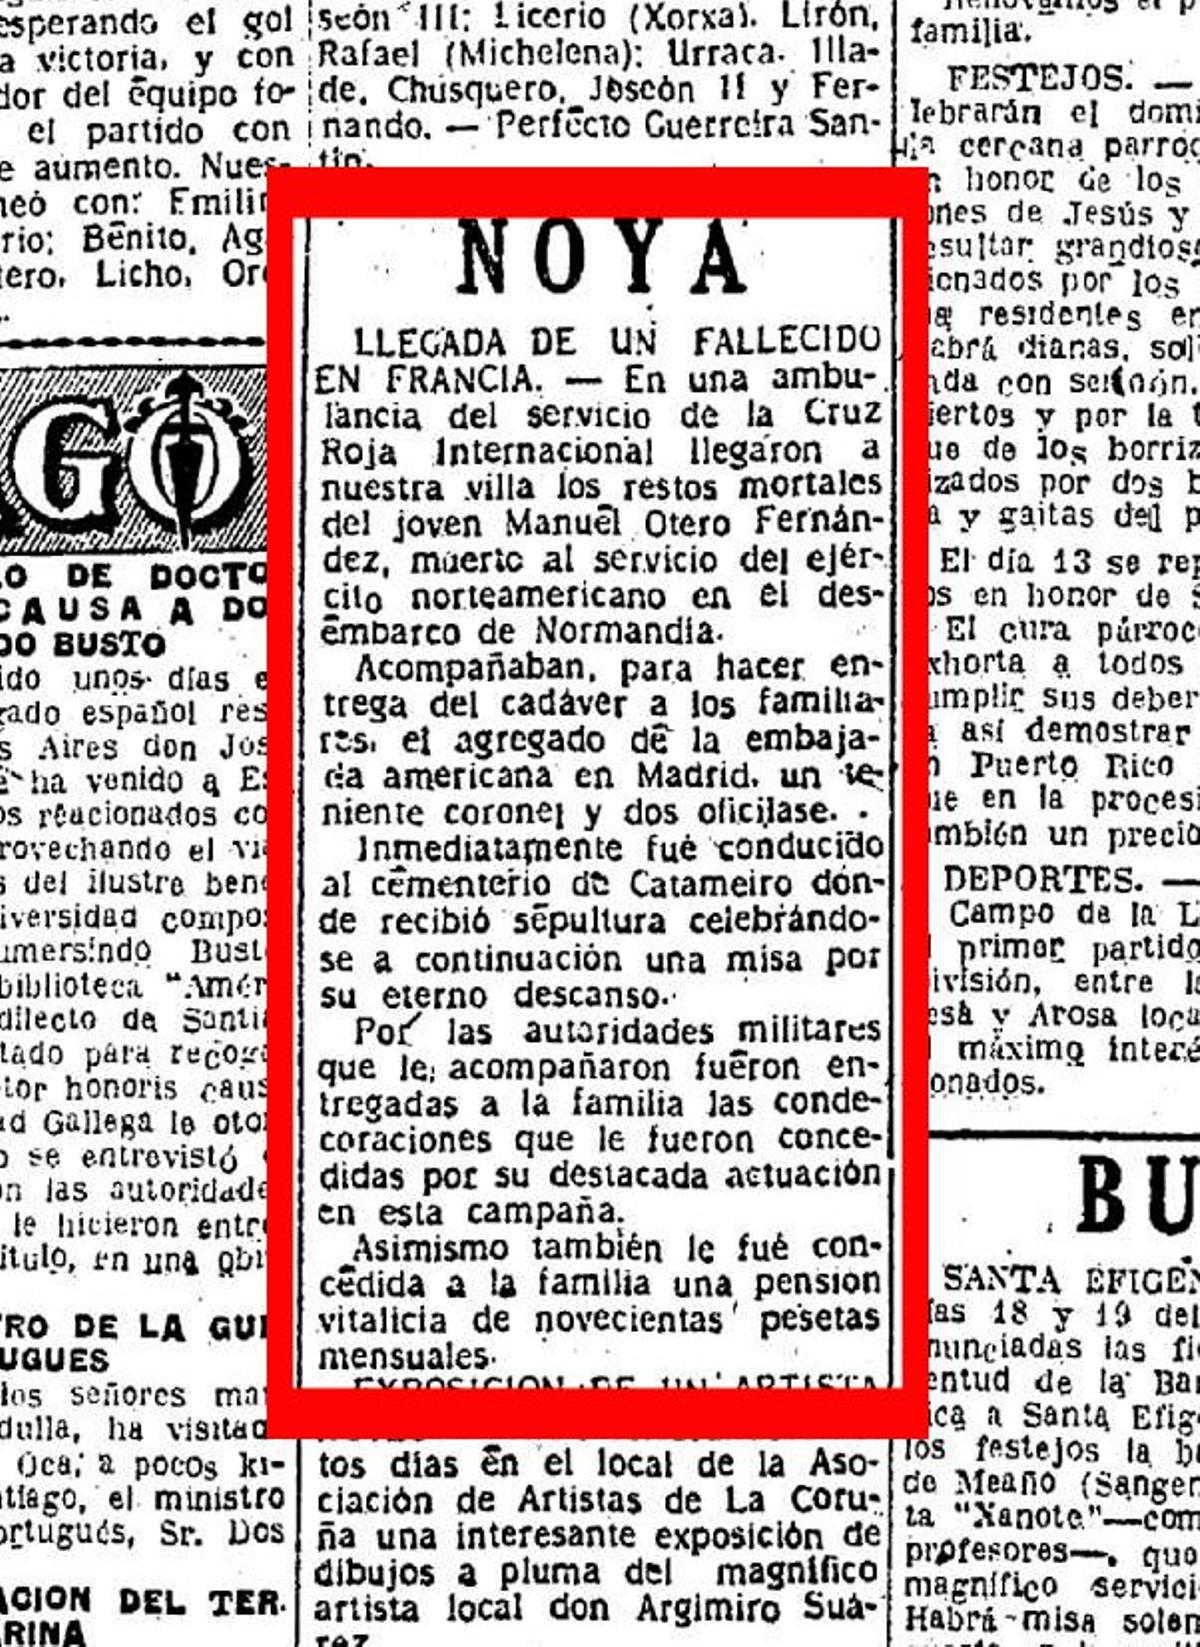 Noticia publicada en el Diario de Noia en 1948